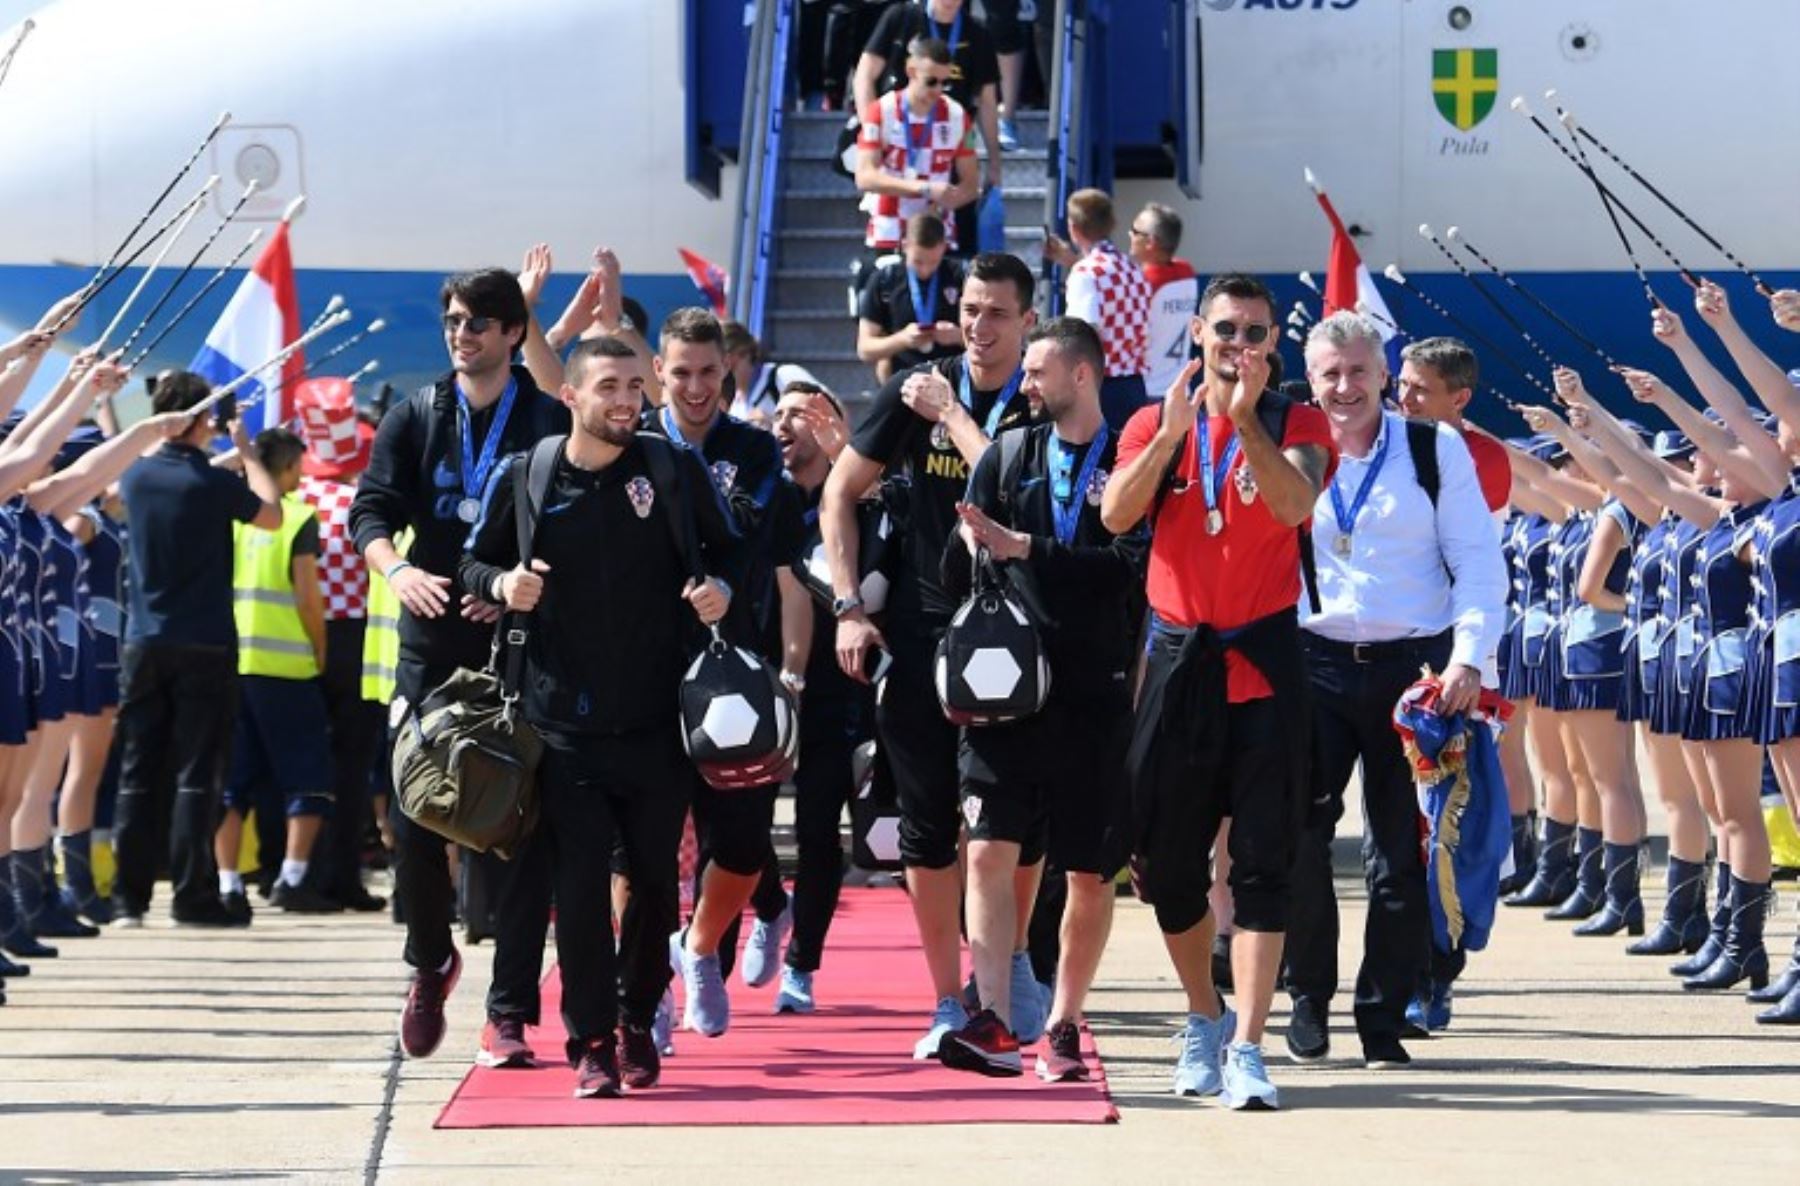 La selección de Croacia fue recibida con todos los honores a su llegada a Zagreb